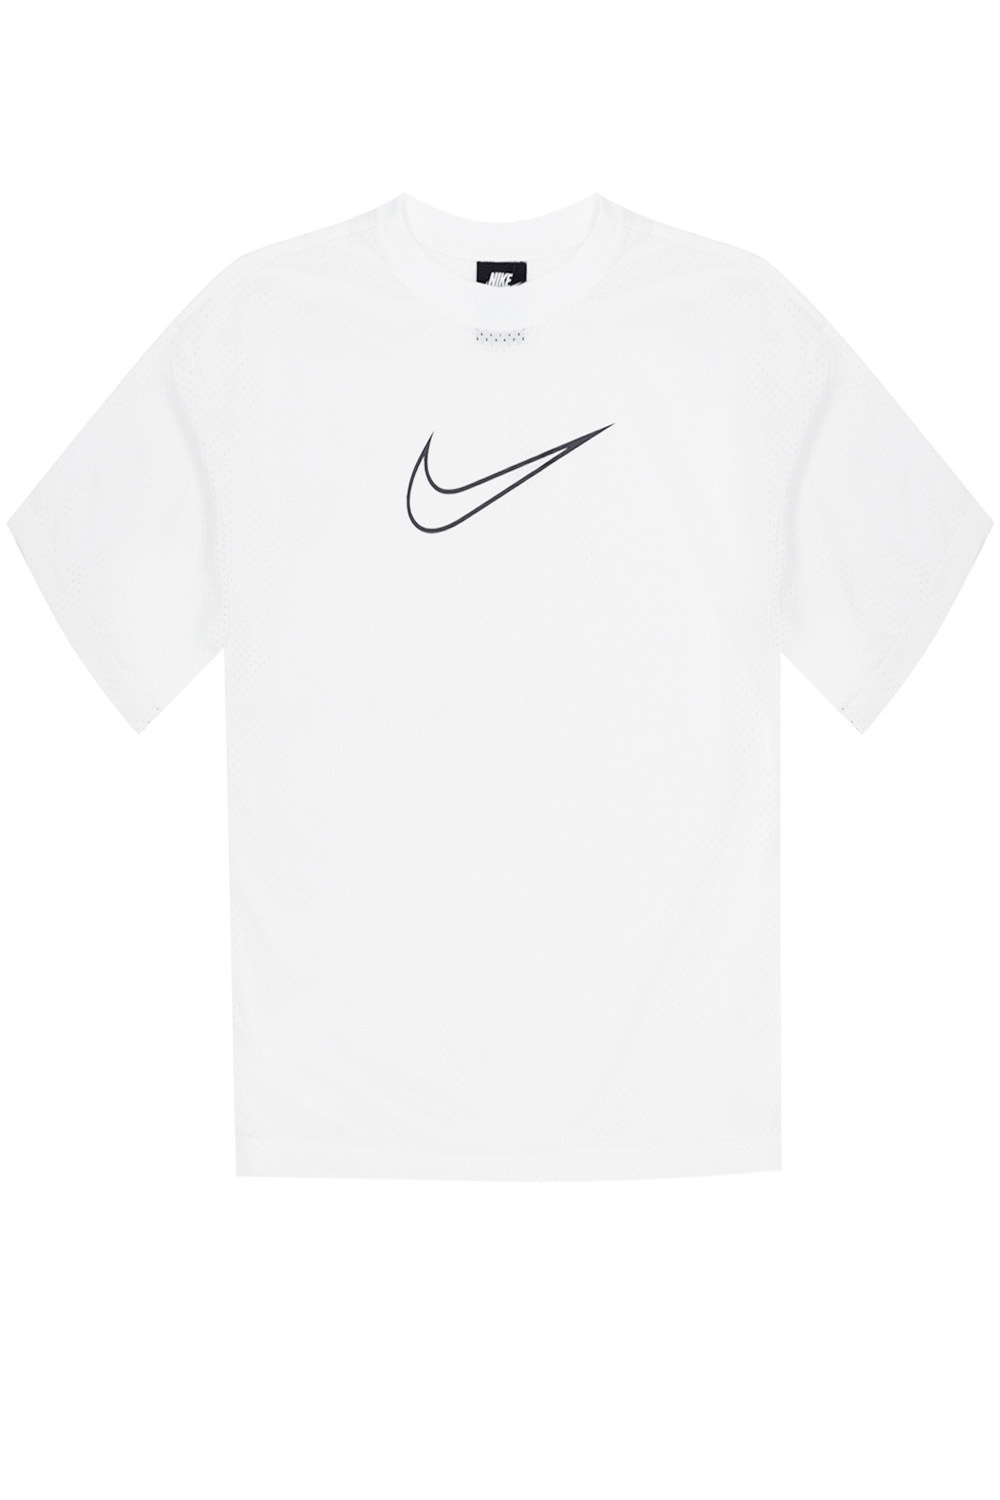 nike logo size on shirt